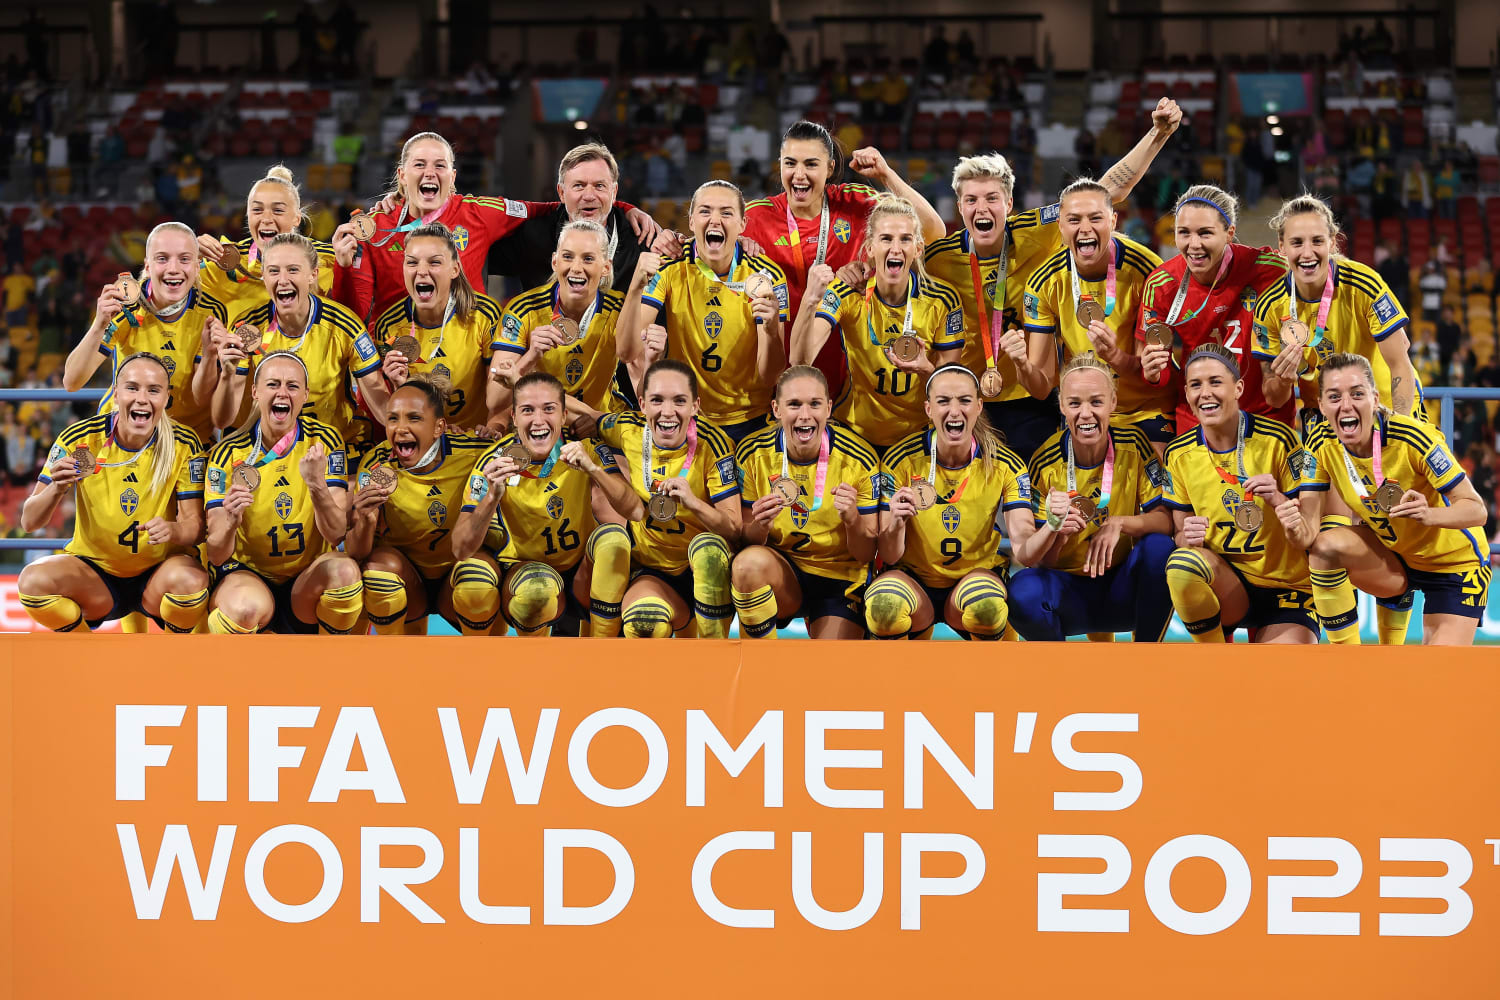 Sweden beats Australia 2-0 in Womens World Cup bronze medal match